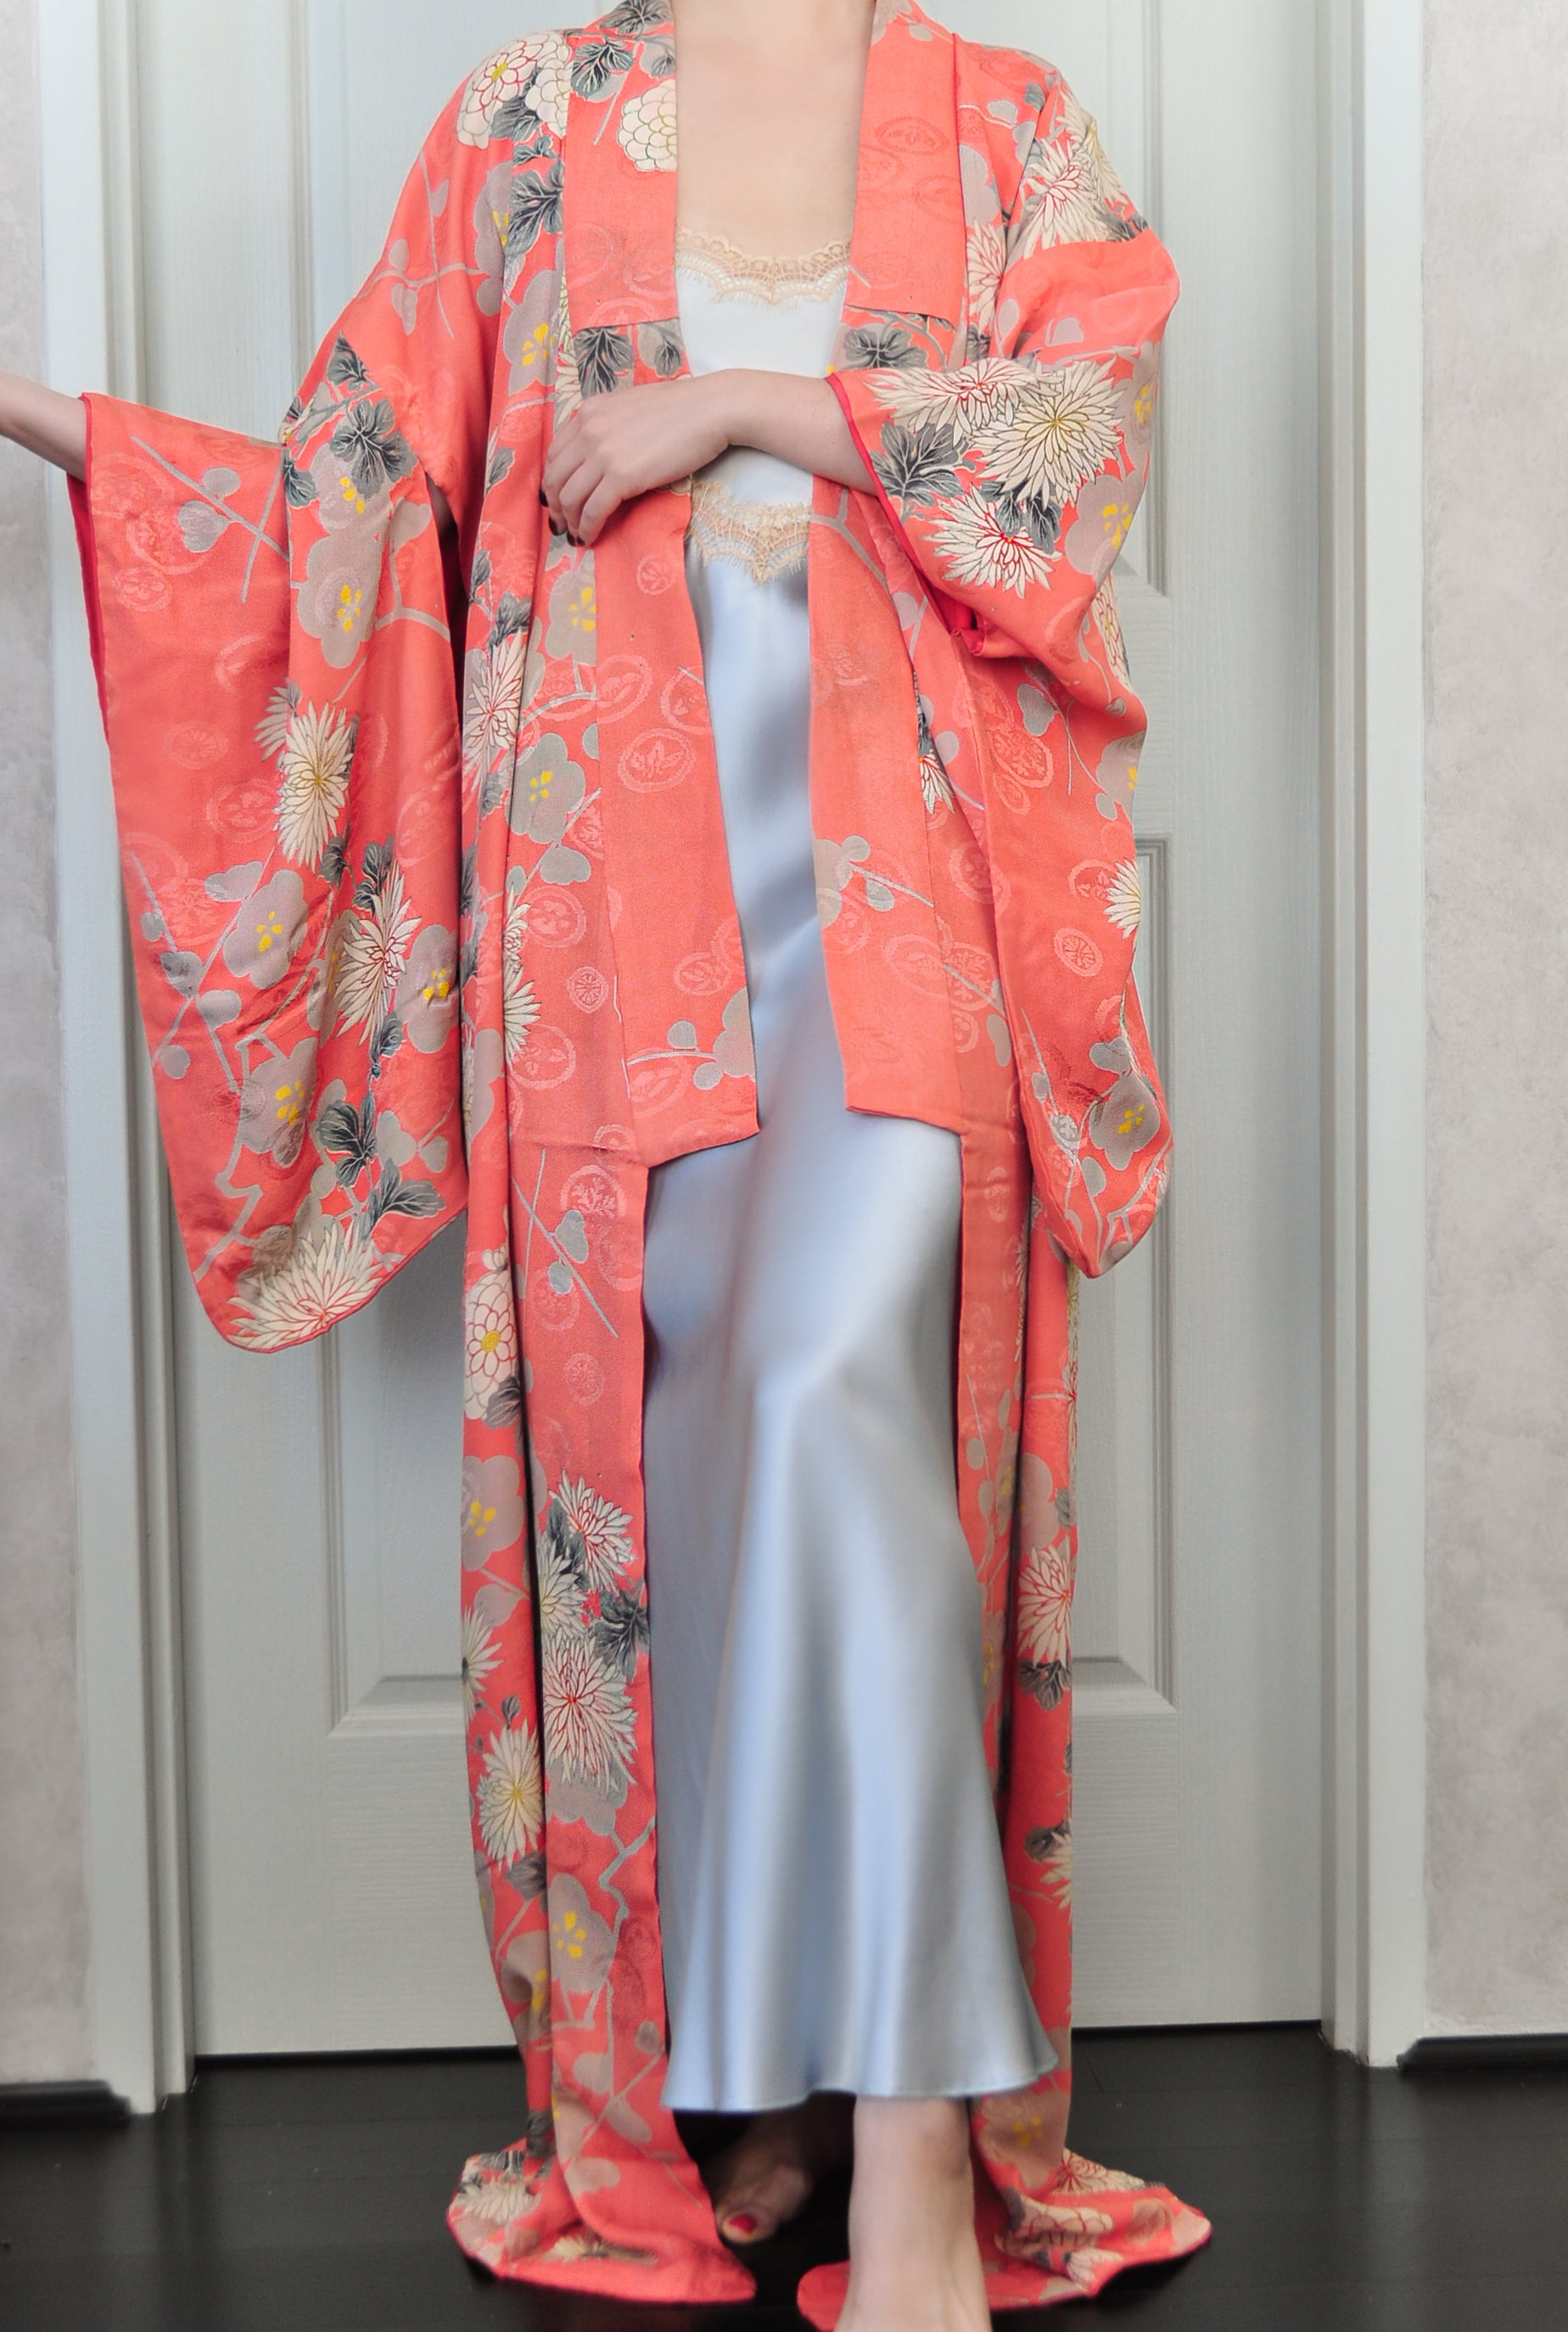 Kirishima Azalea Antique Rinzu Silk Damask Vintage Kimono